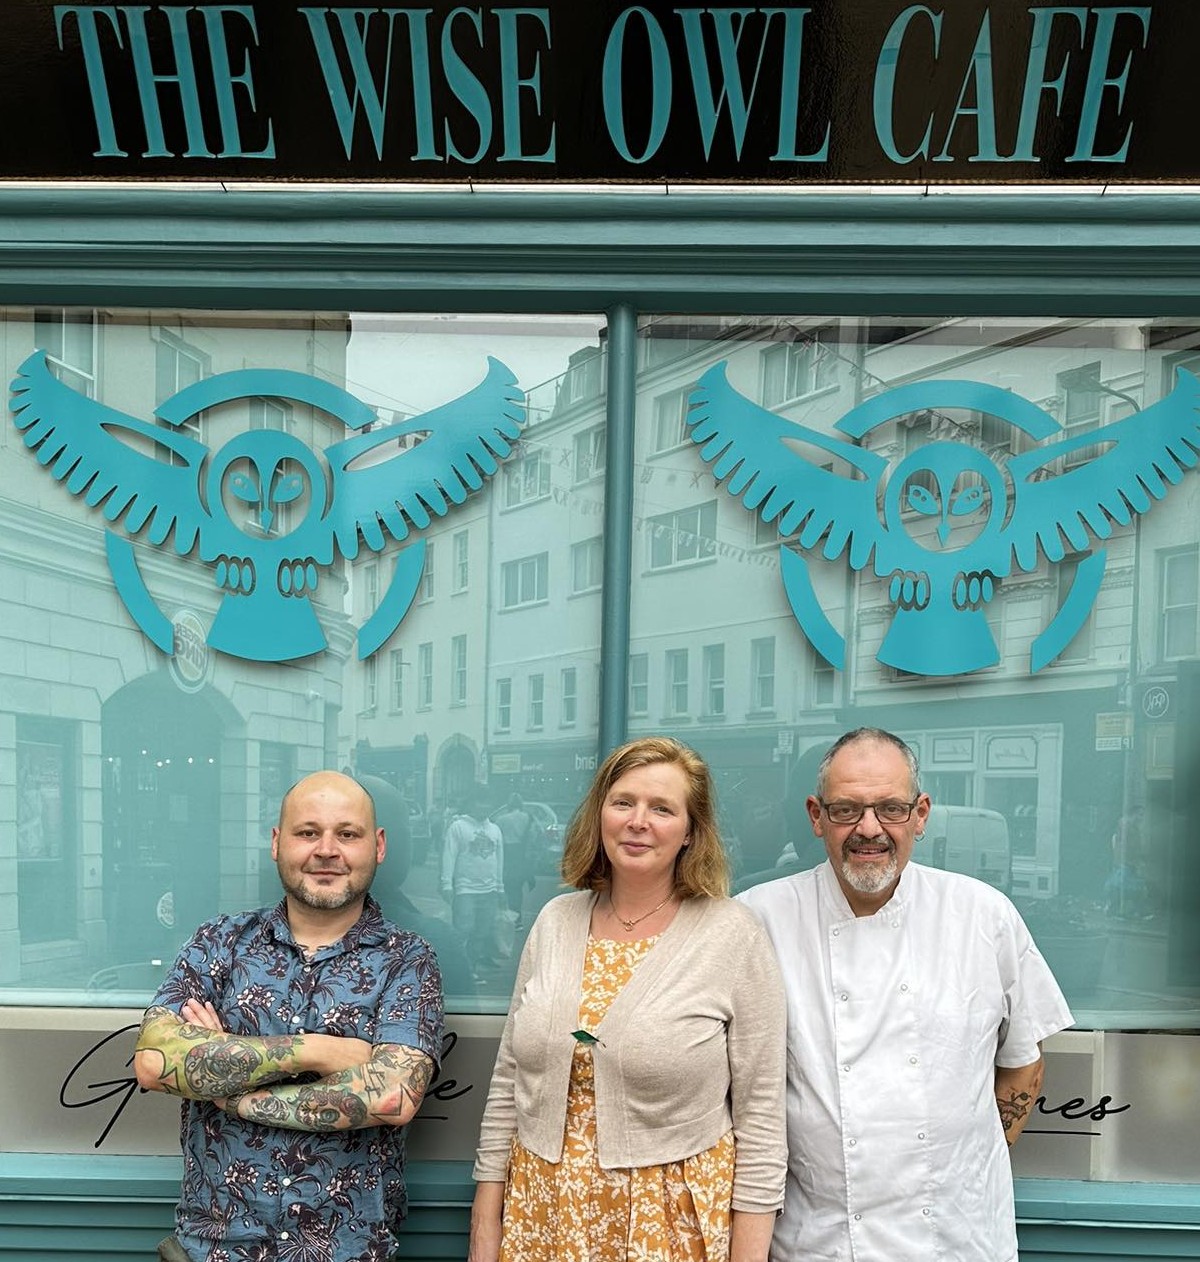 The Wise Owl Café team